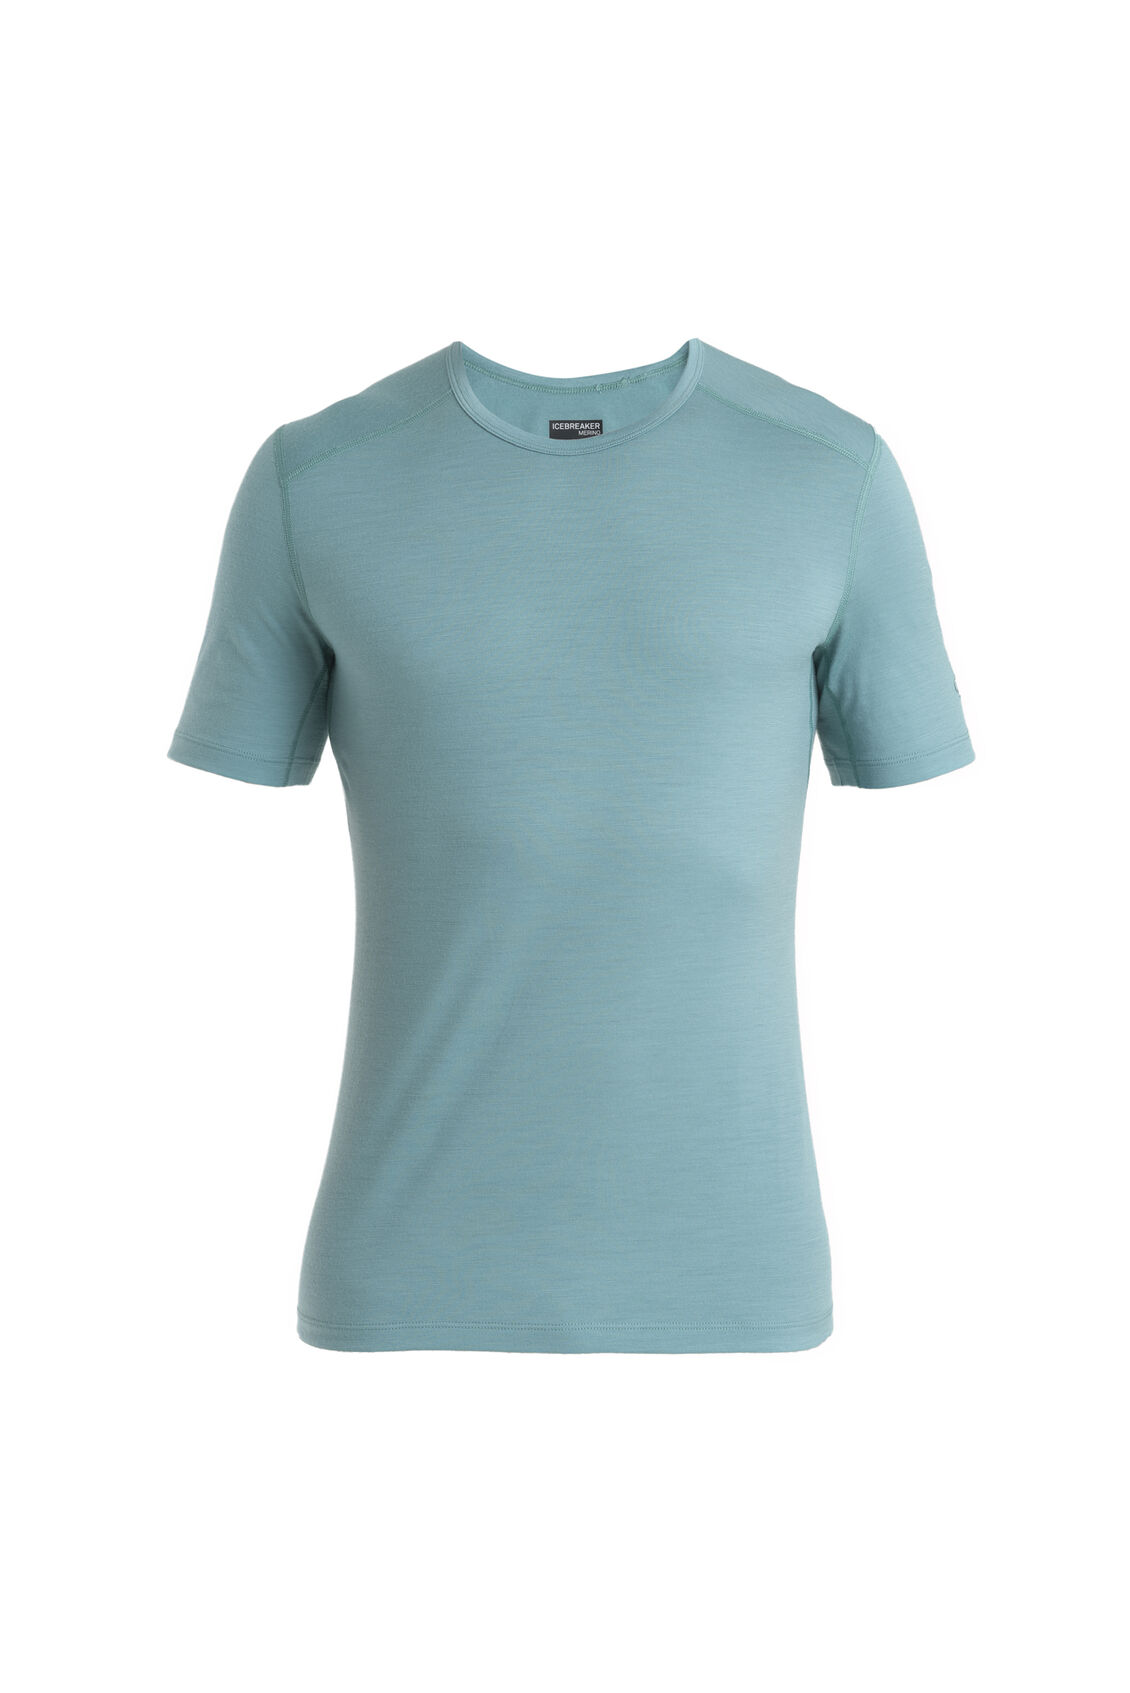 Merino Dowlas Short Sleeve Crewe T-Shirt IB Glacier Squares